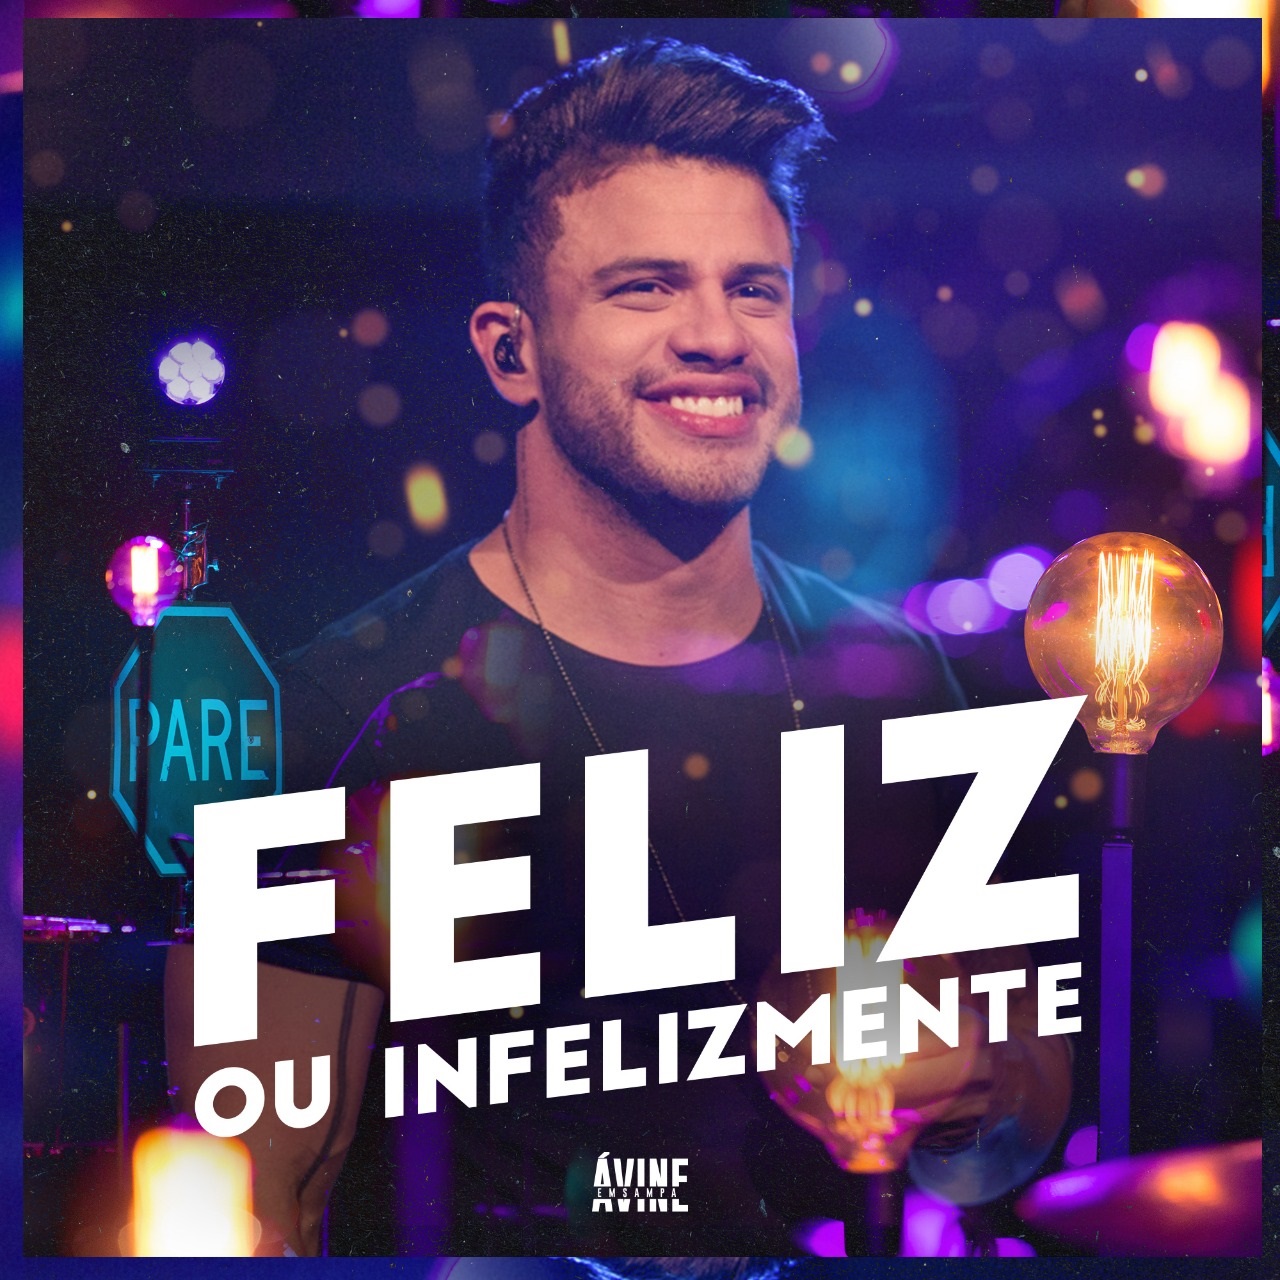 Ávine Vinny lança "Feliz ou Infelizmente", novo single do projeto ao vivo em São Paulo 41